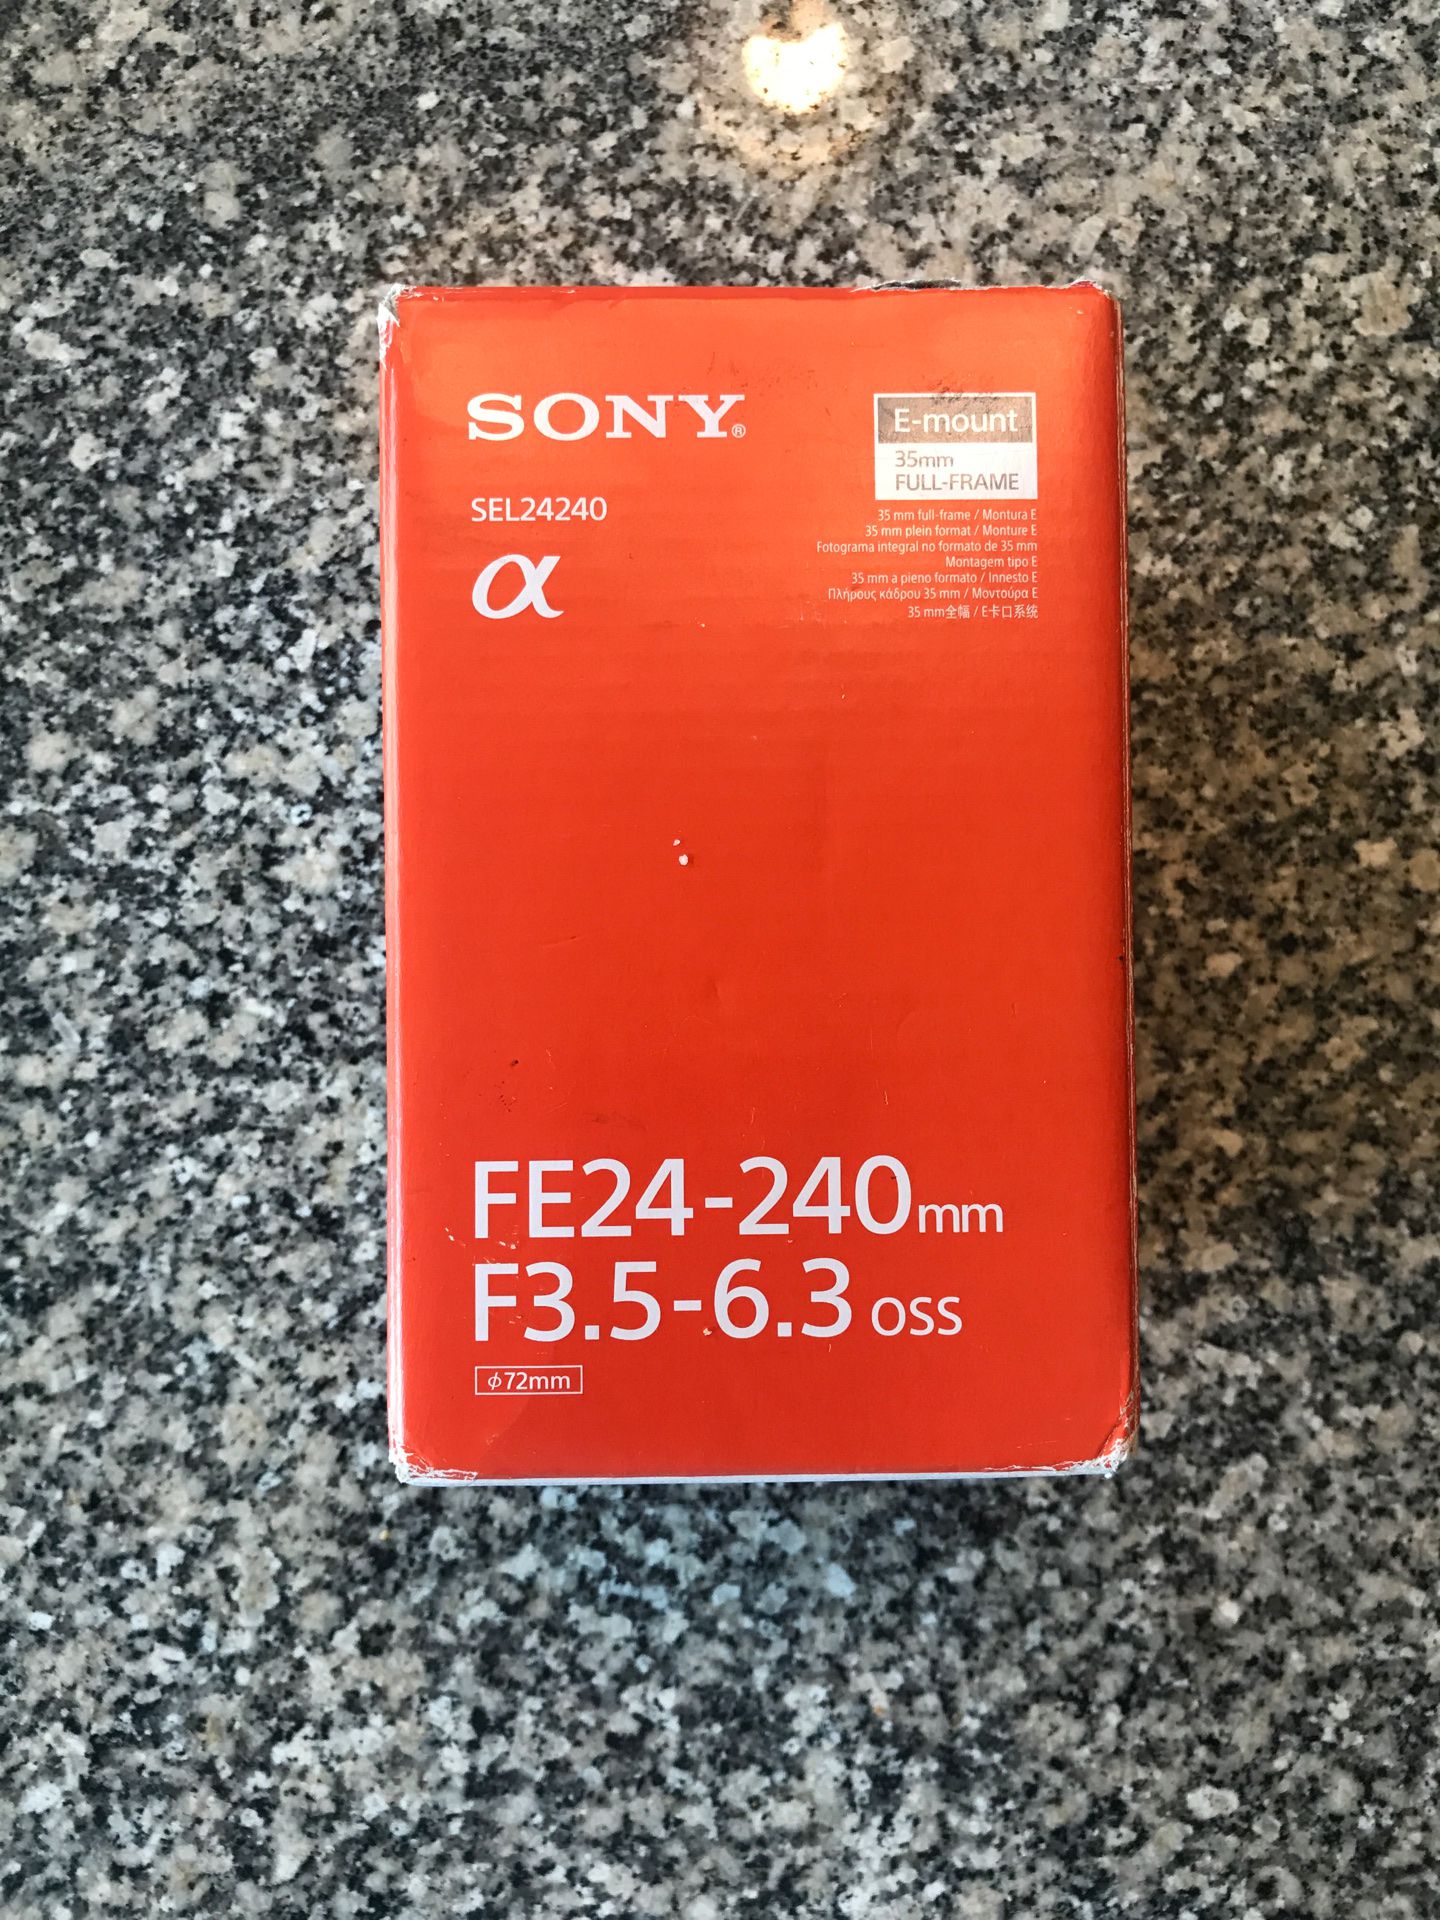 Sony SEL24240 lens